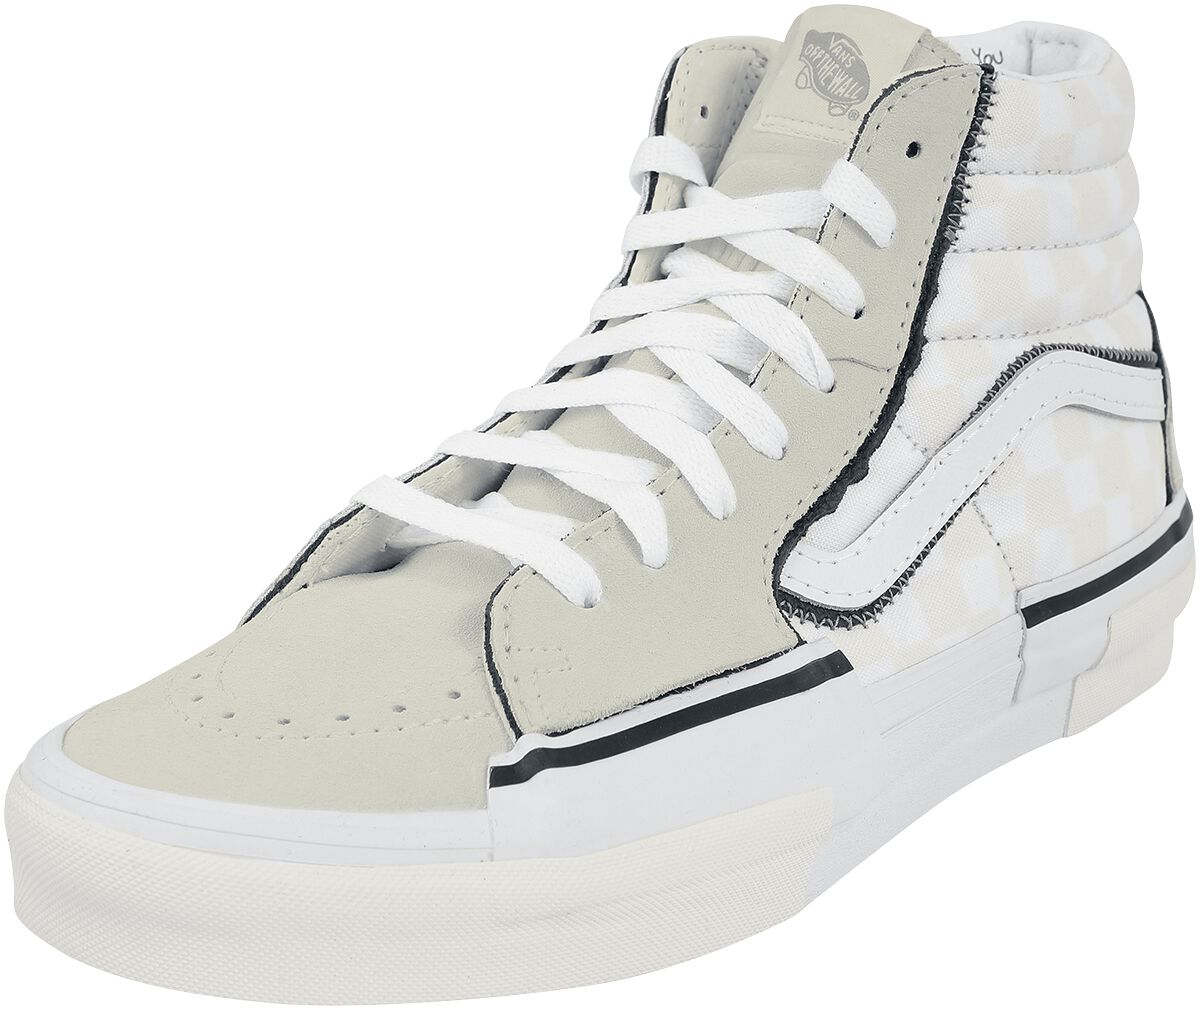 Vans Sneaker high - SK8-HI Reconstruct - EU44 bis EU45 - für Männer - Größe EU44 - weiß